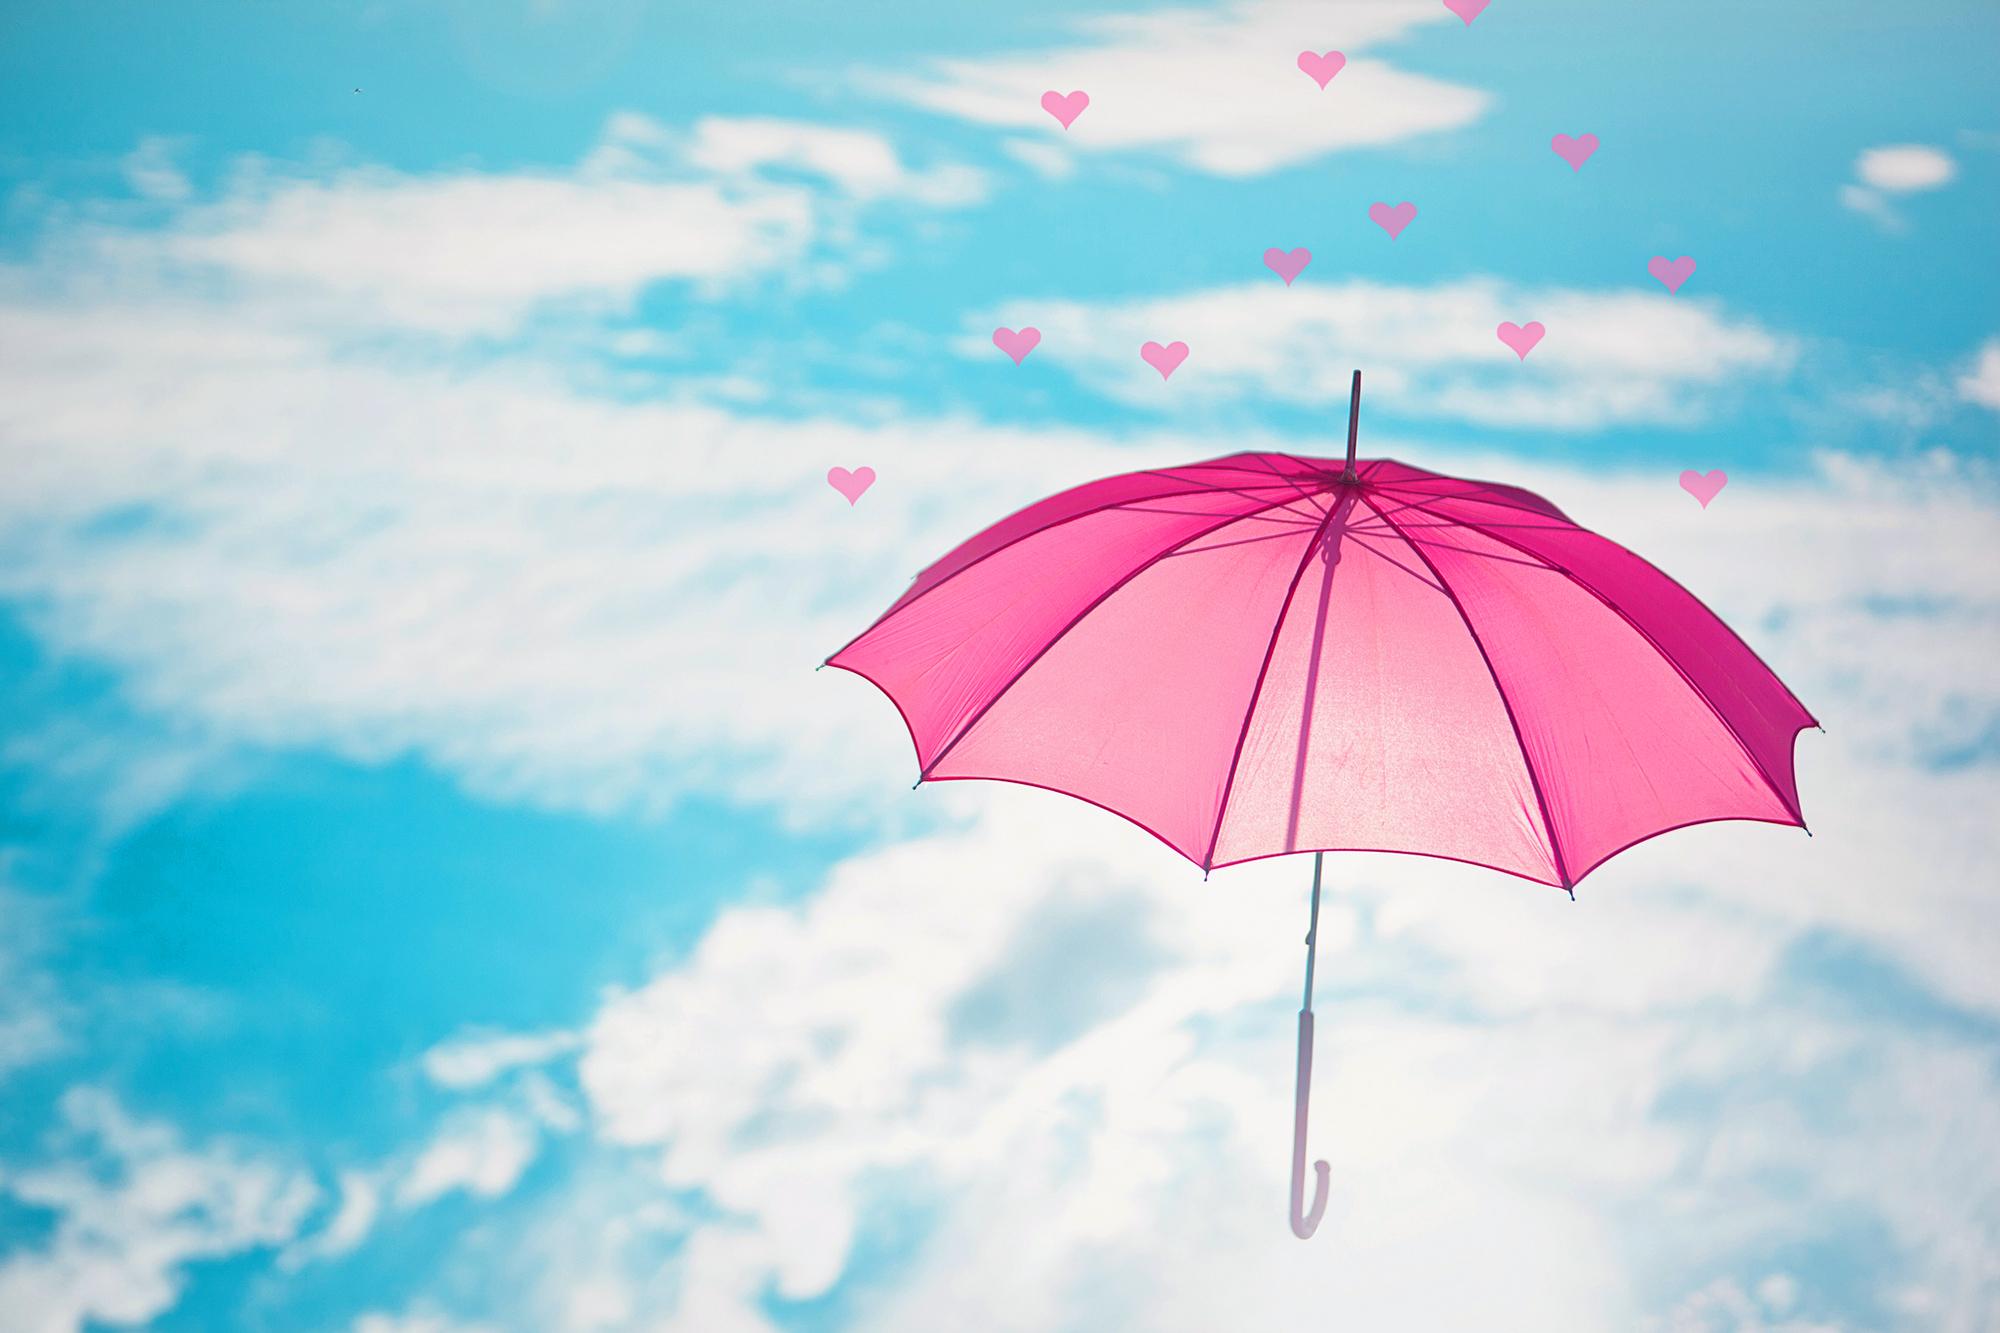 Artistic Umbrella Sky Blue Heart Pink 2000x1333